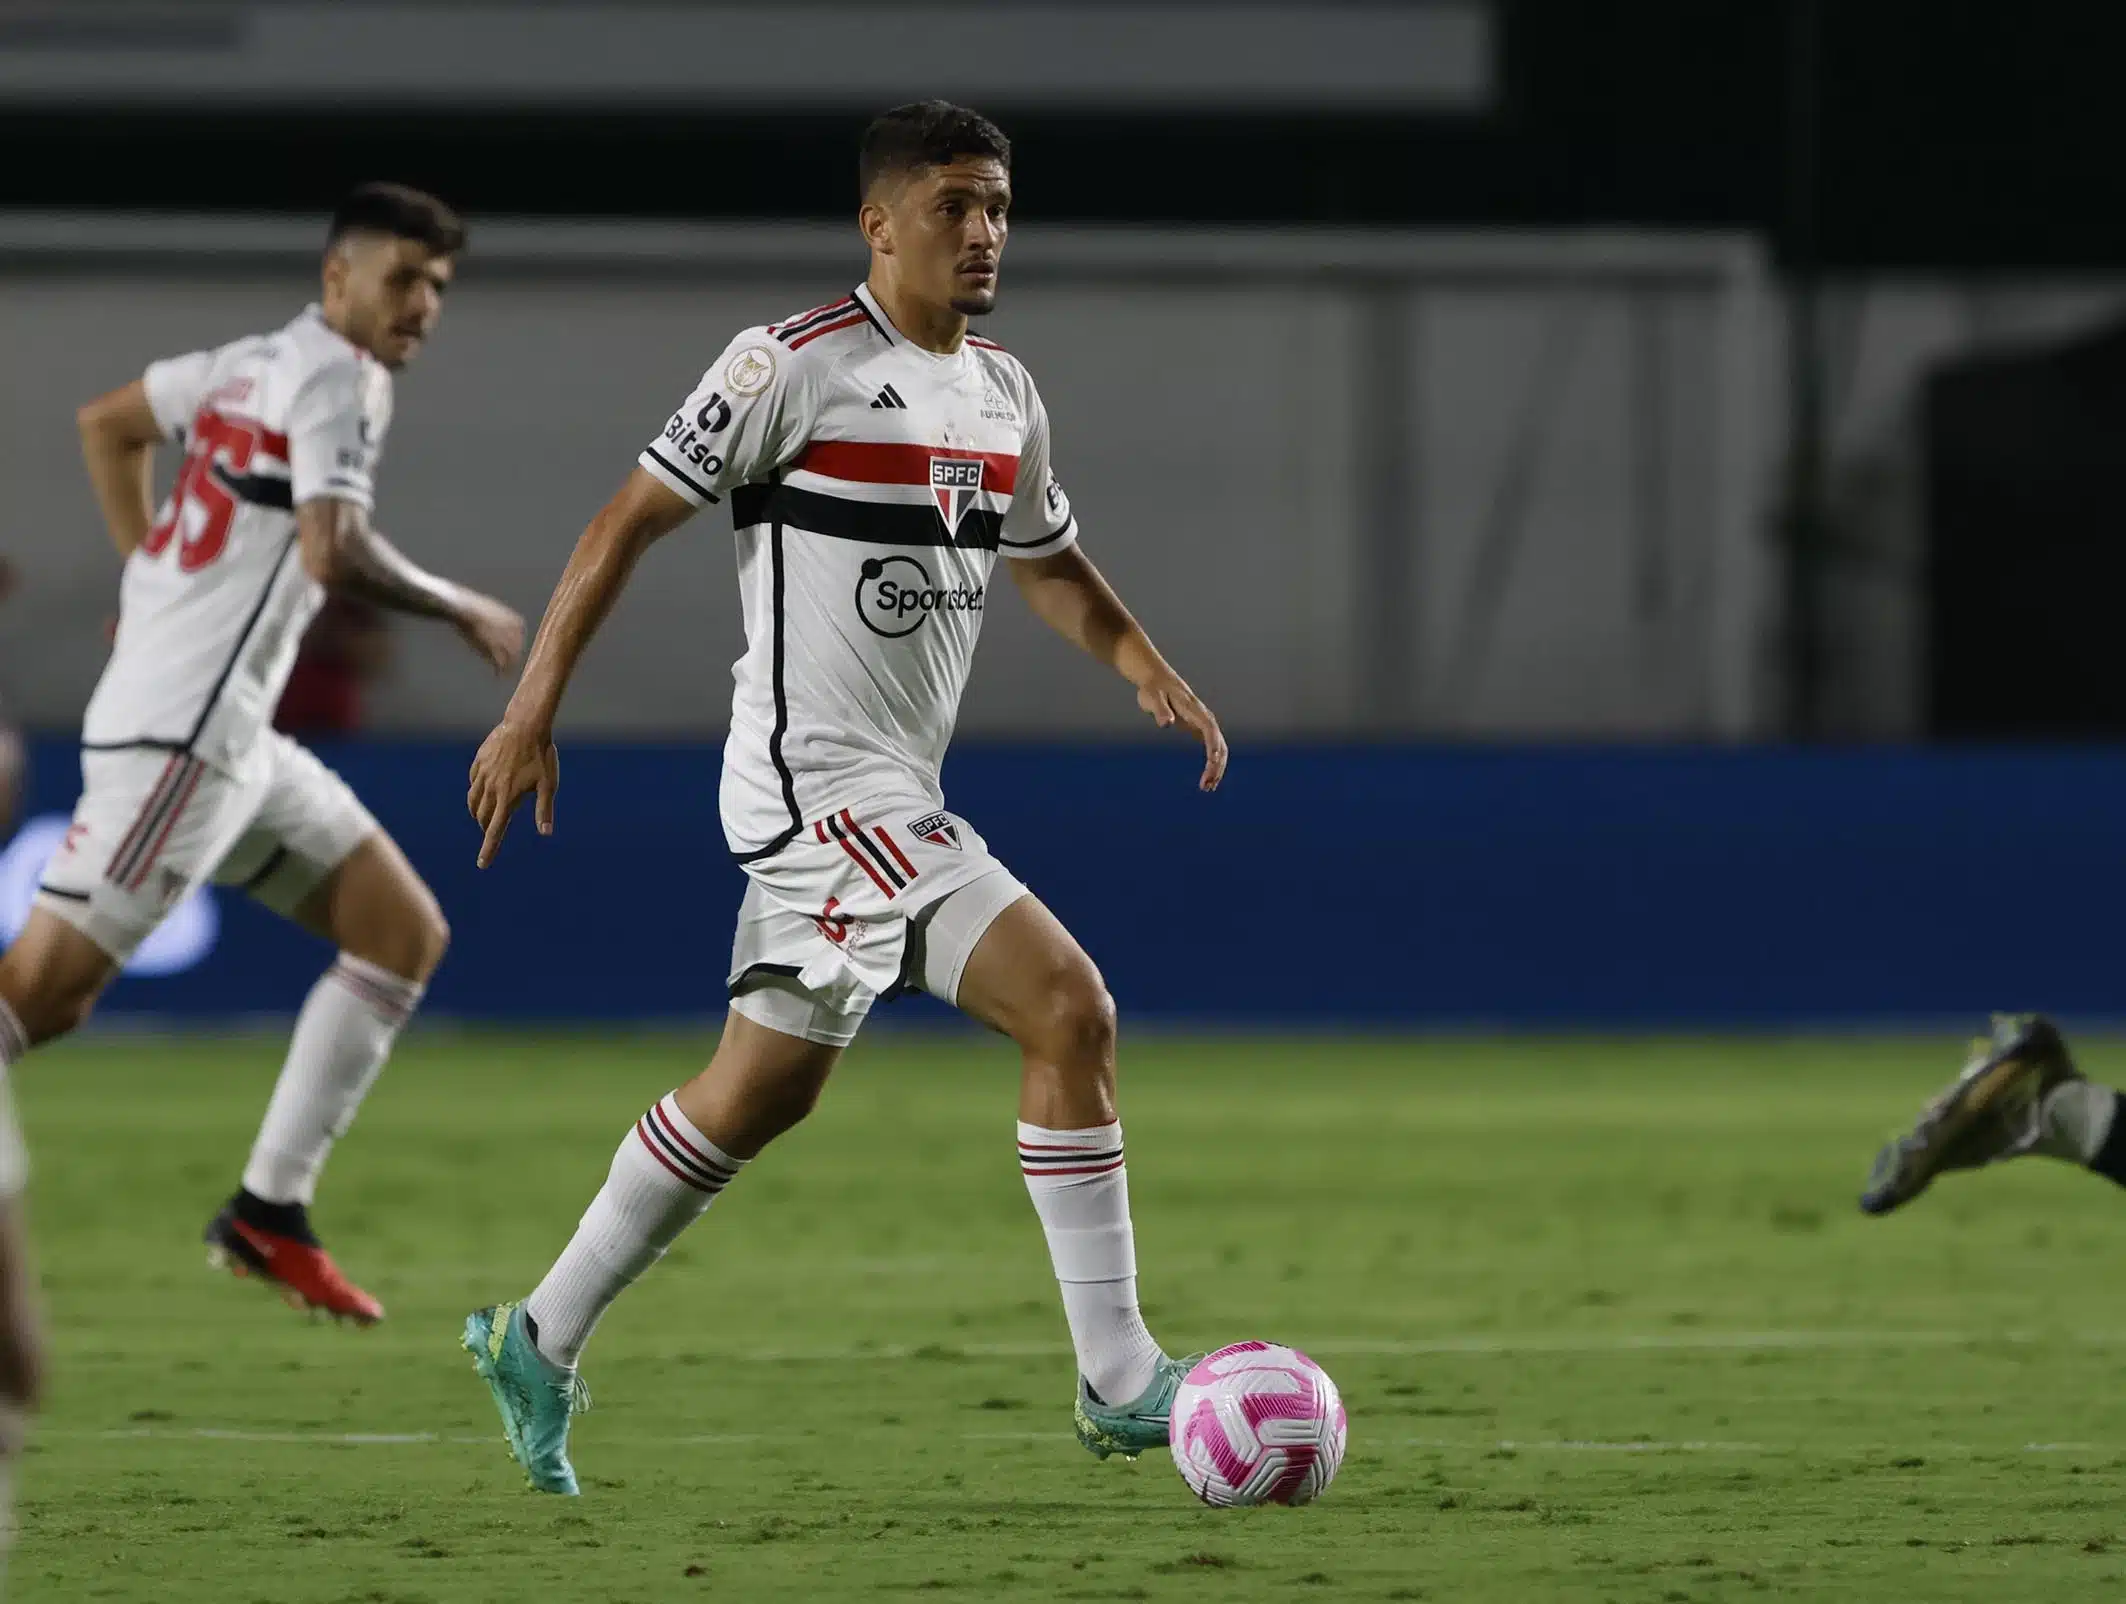 Torcida elege substituto de Pablo Maia contra o Palmeiras